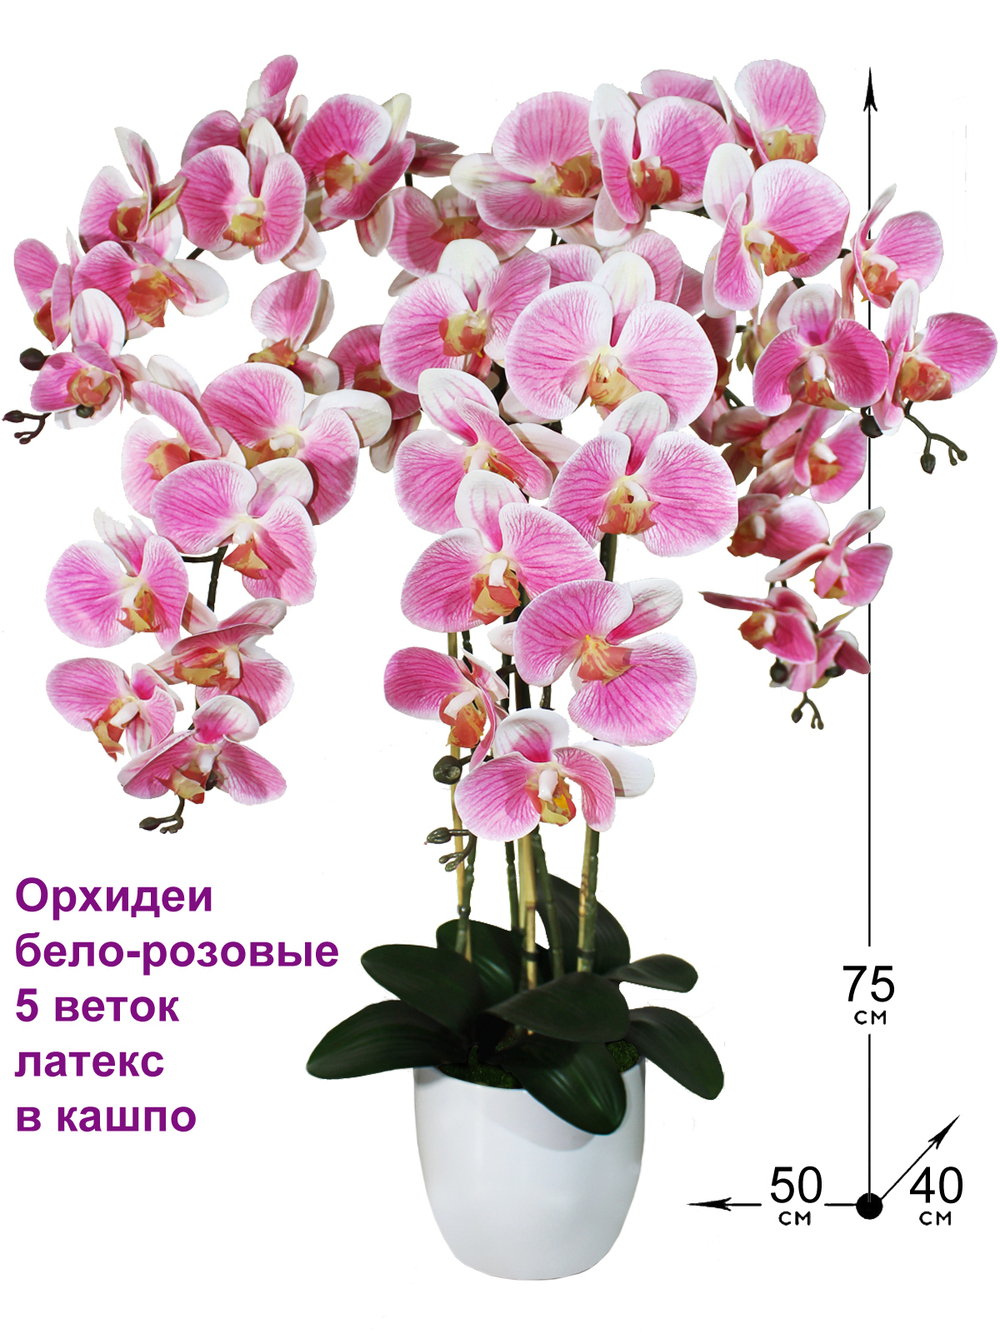 Искусственные Орхидеи Фаленопсис 5 веток бело-розовые латекс 75см в кашпо